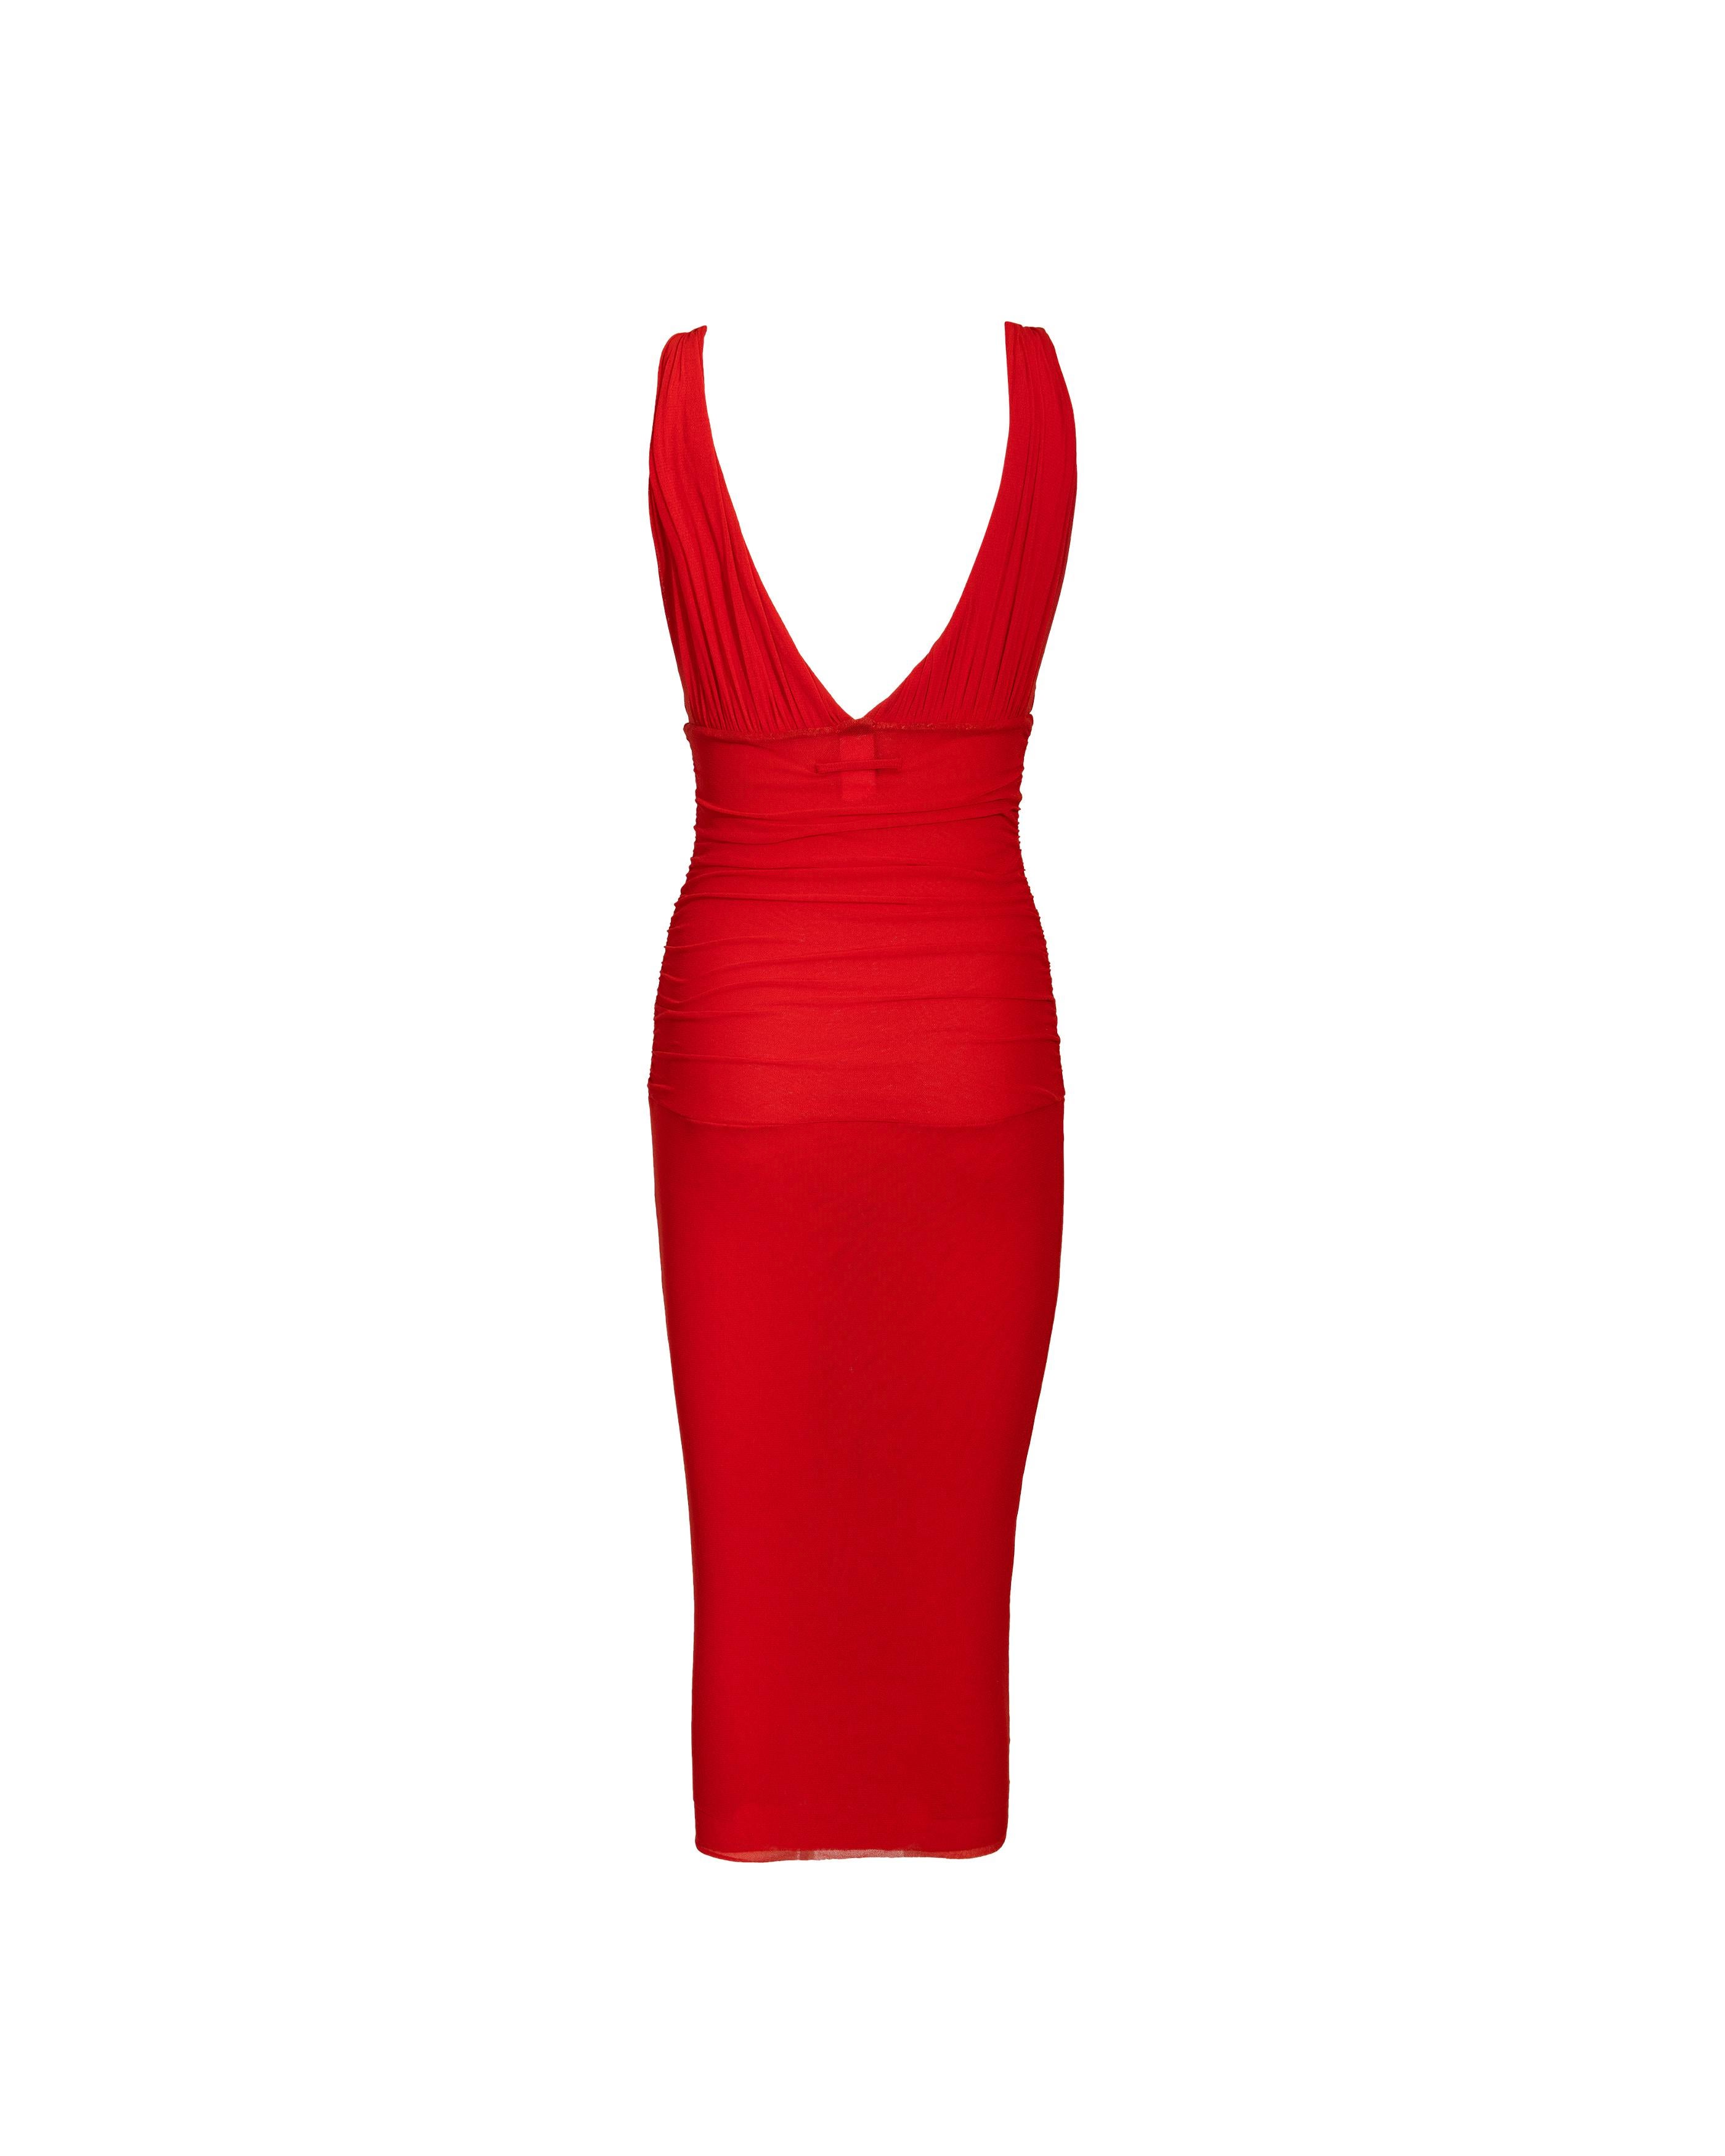 Women's 2000's Jean Paul Gaultier 'Soleil' Red Below-Knee Sleeveless Dress For Sale